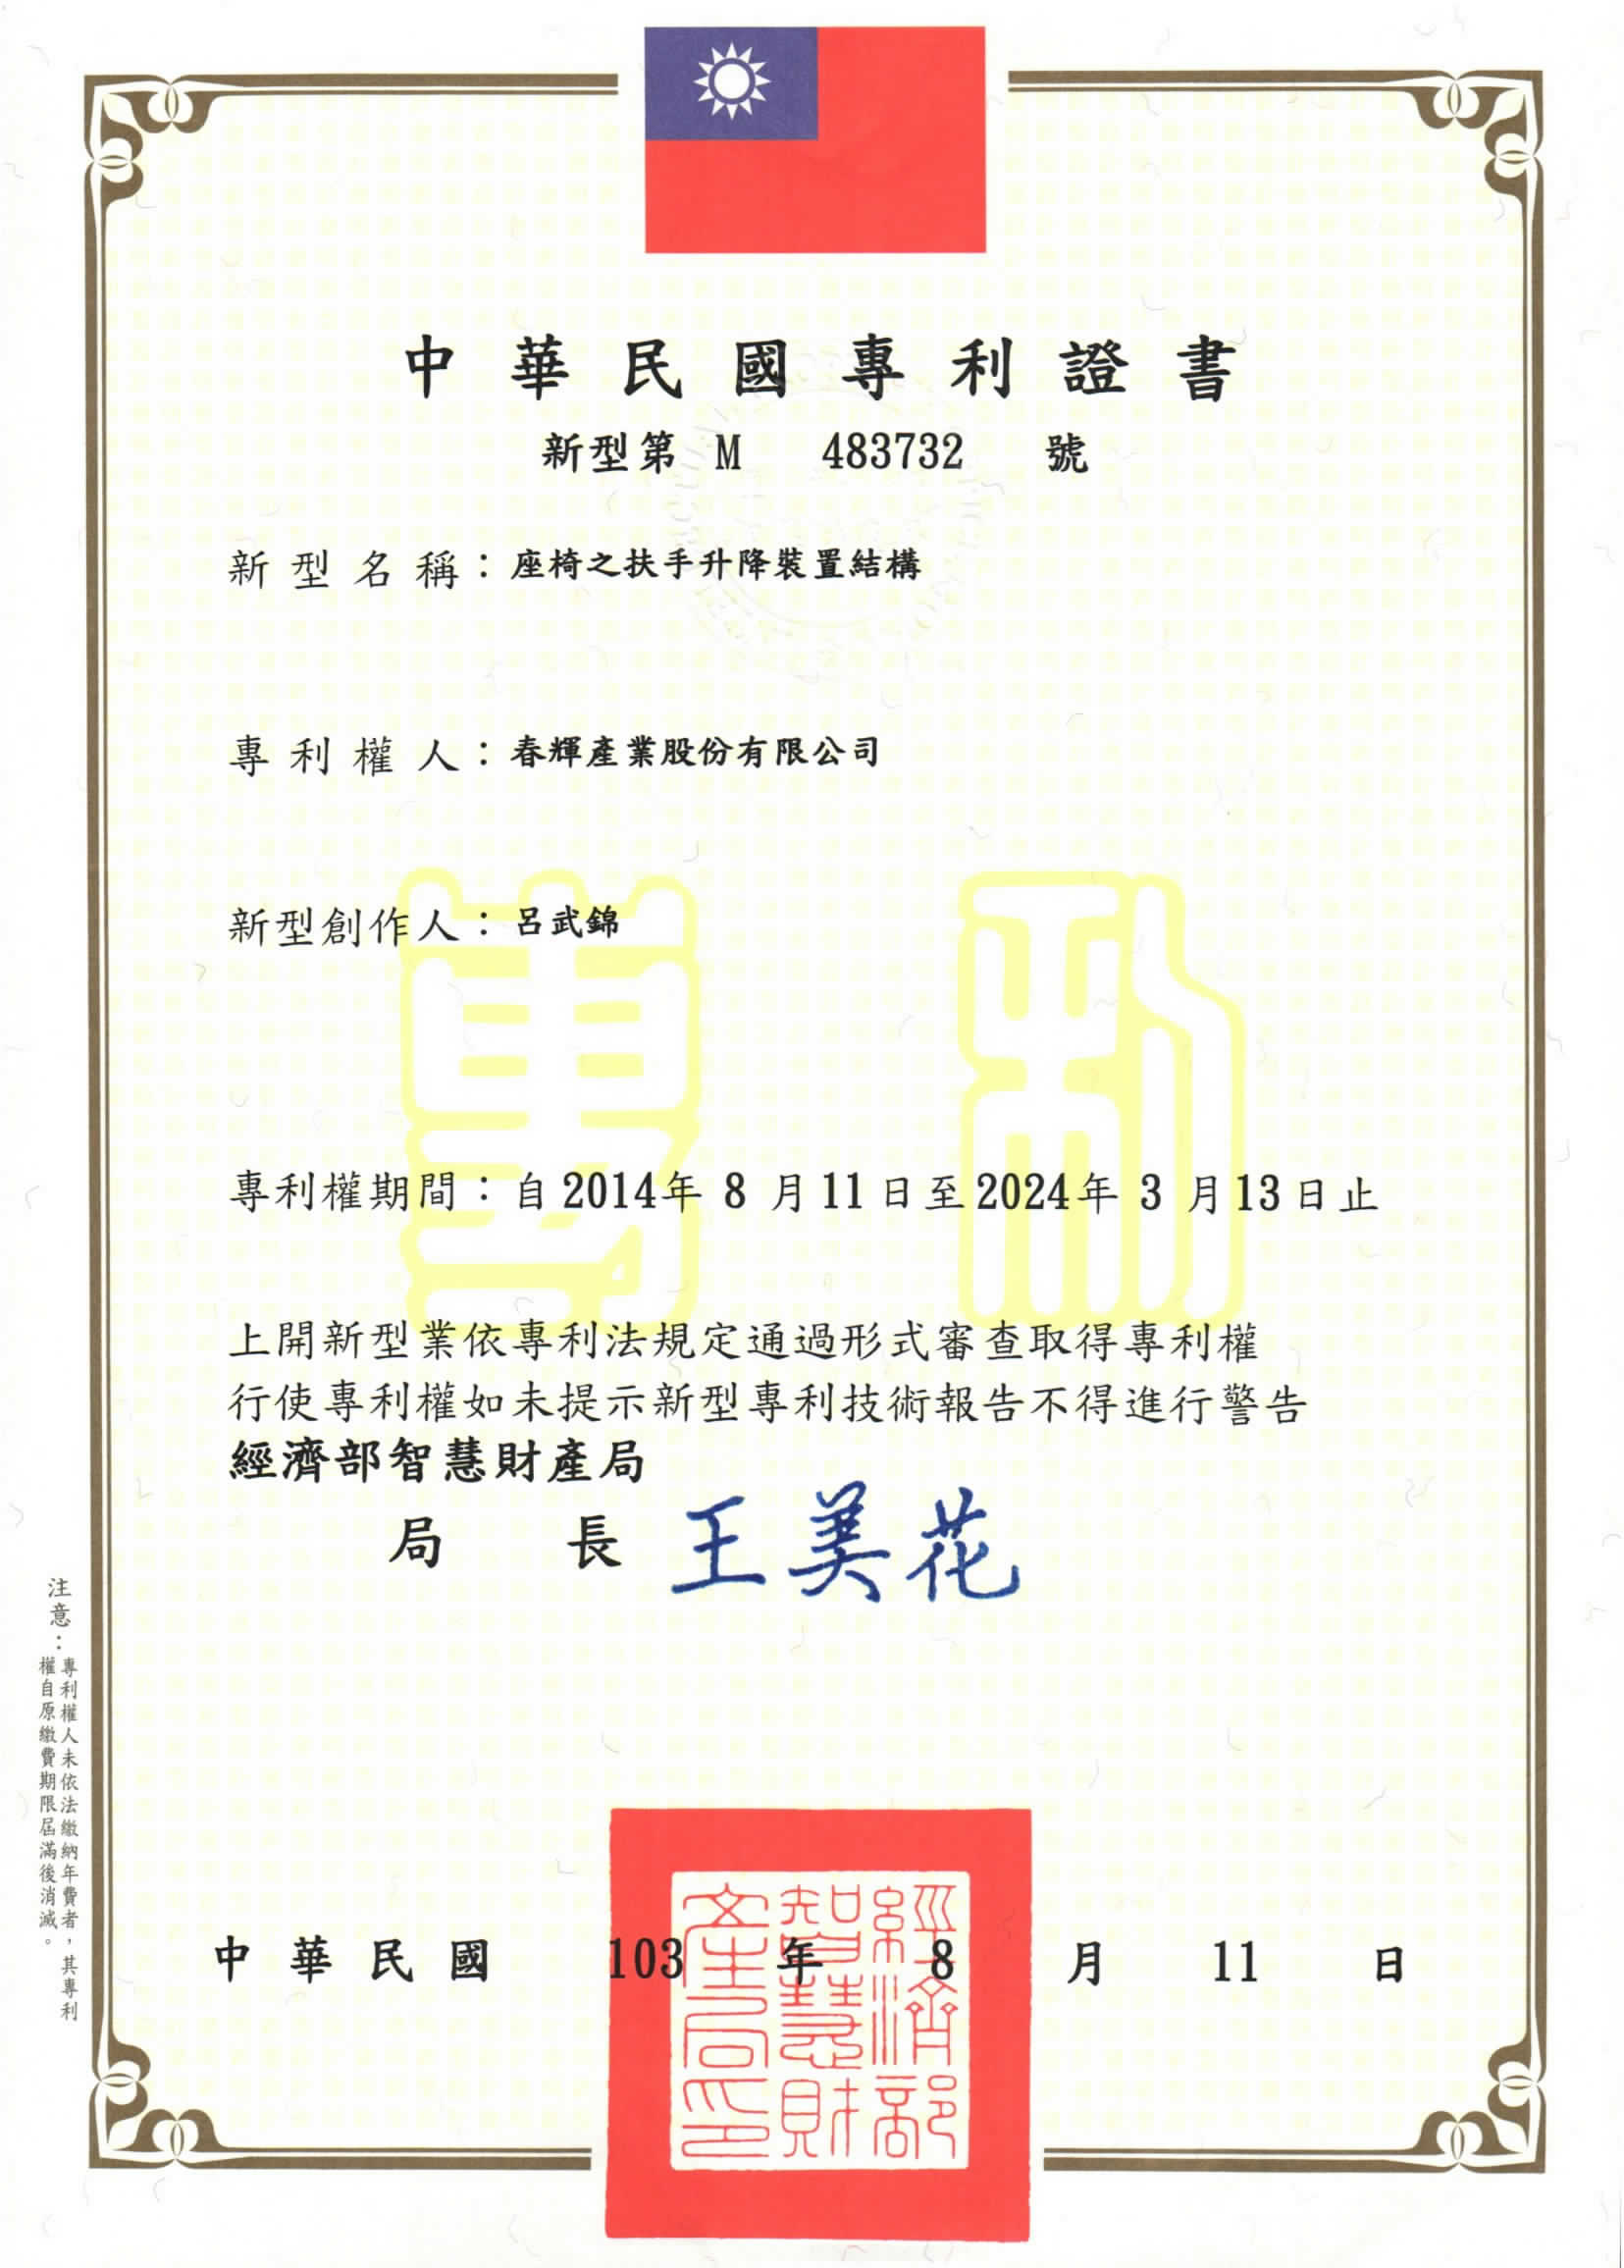 TAIWAN Patent